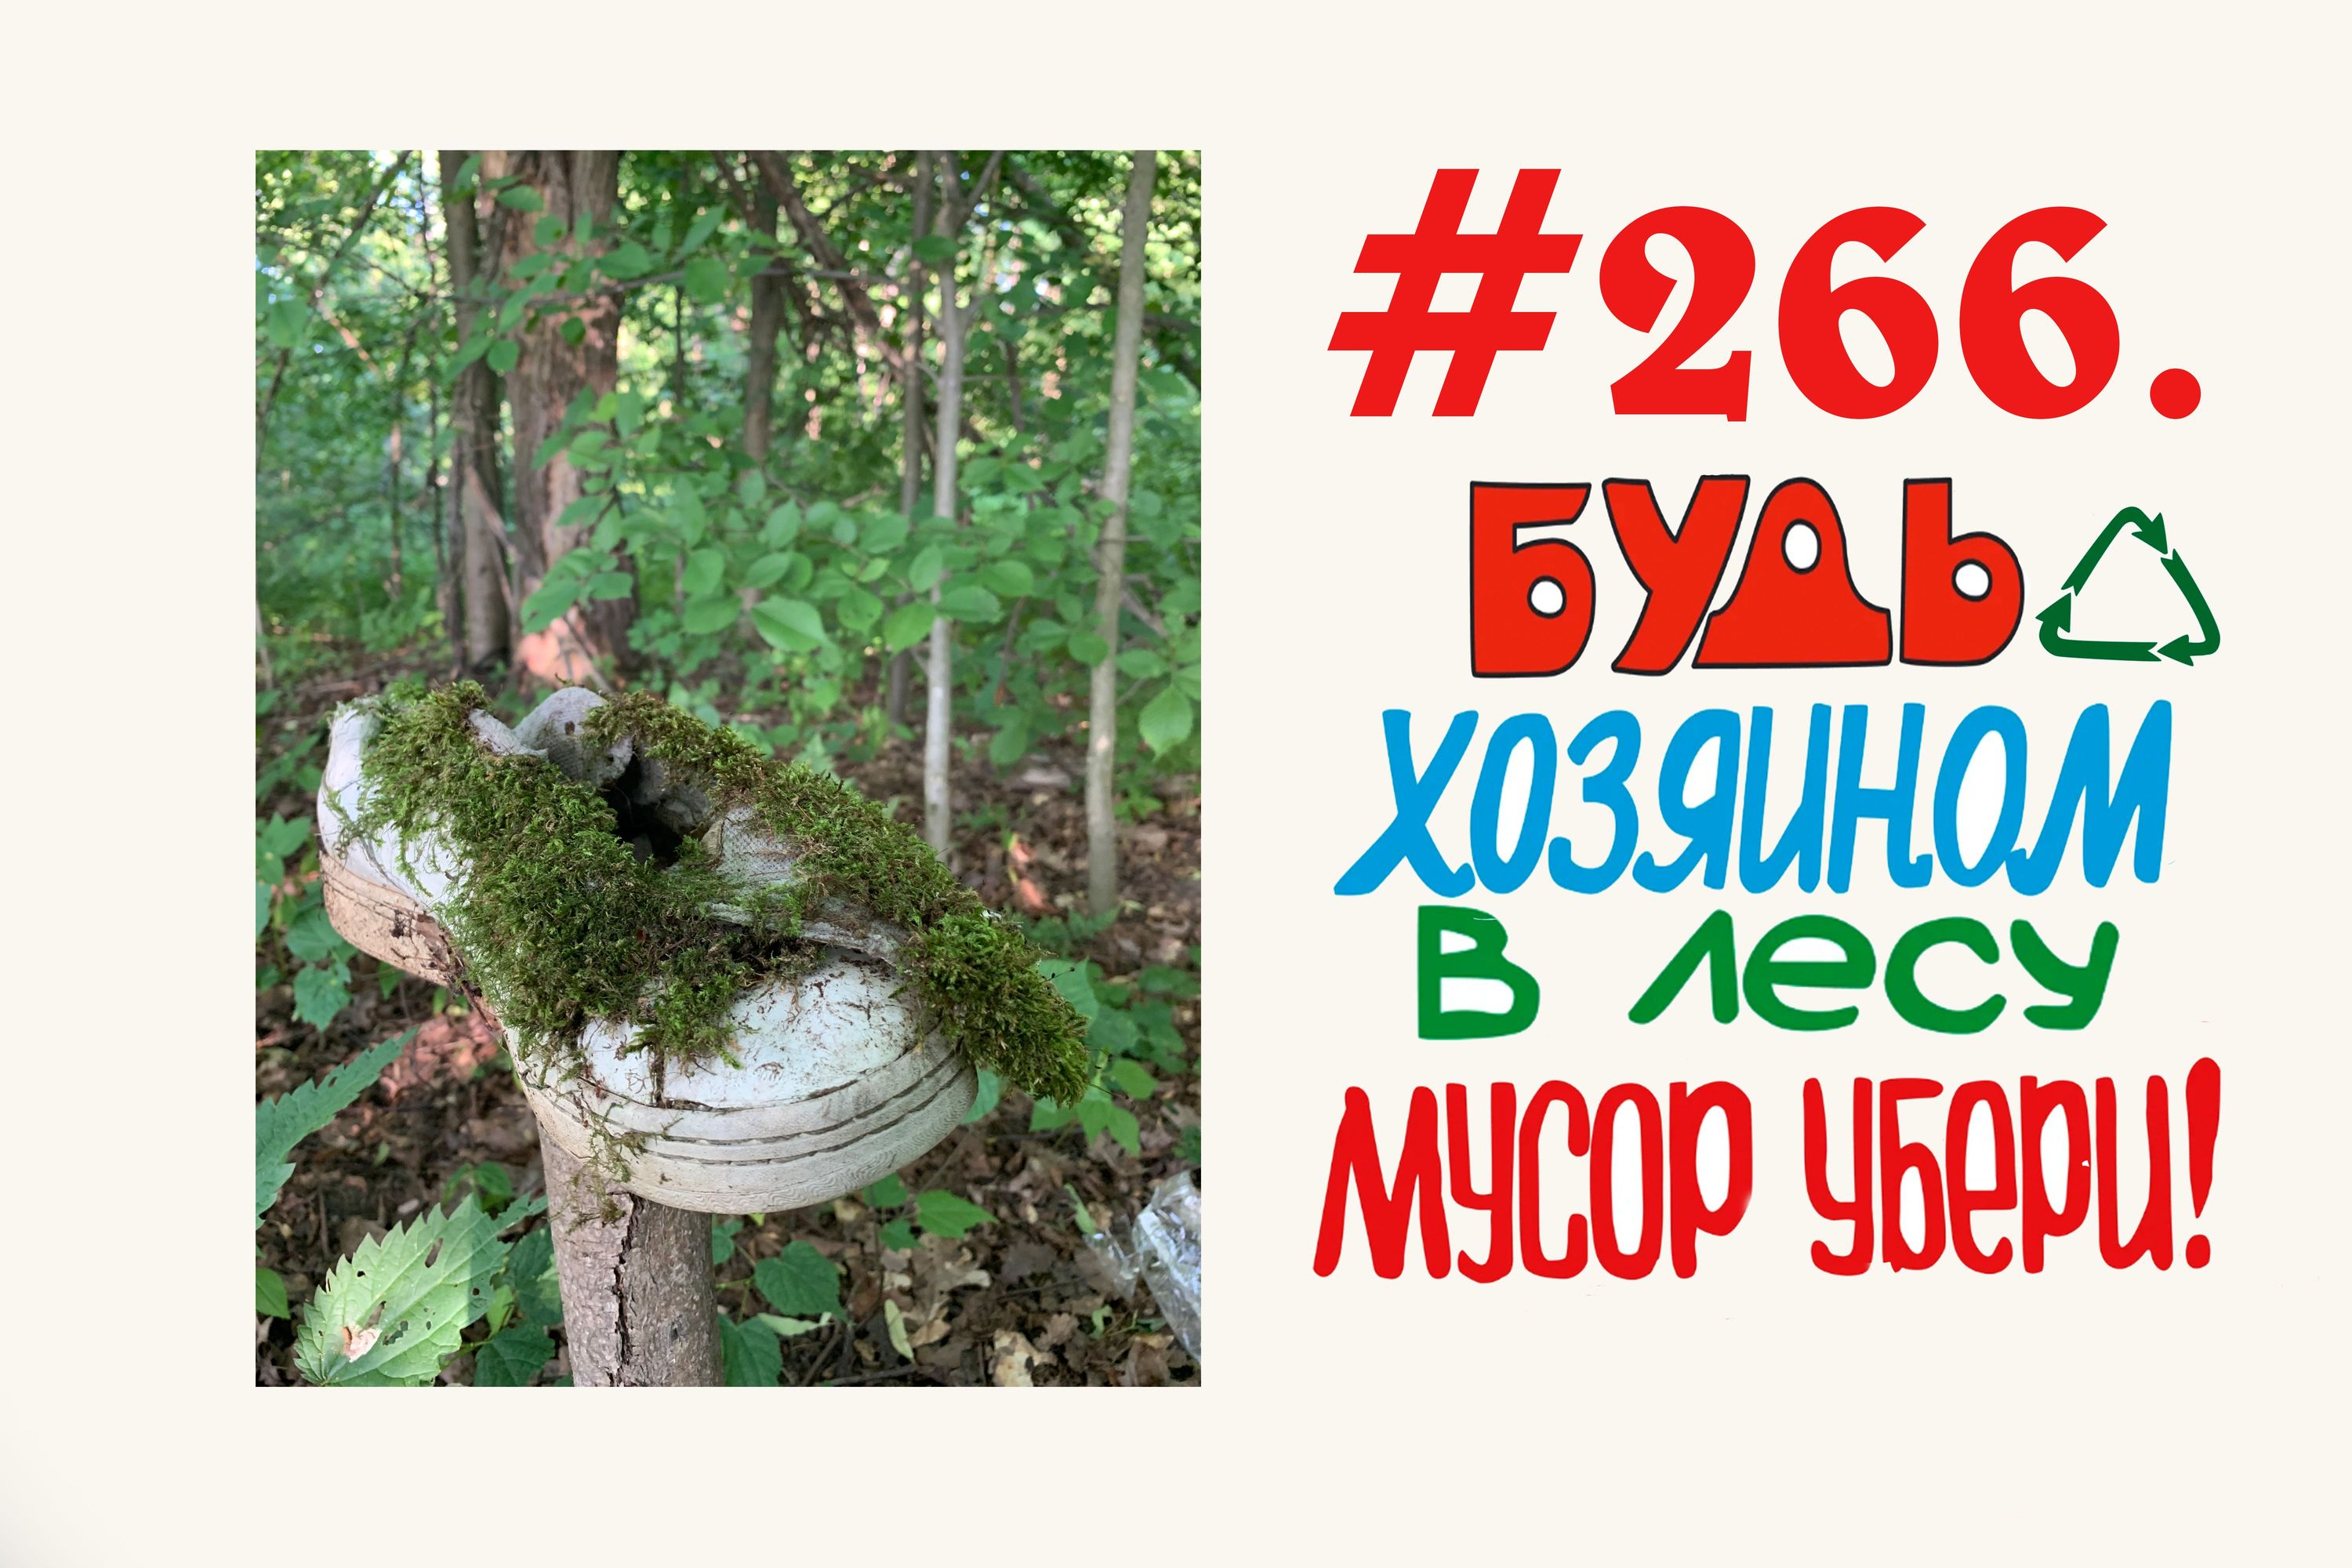 Экологический народный контроль в лесу ( 59 мешков мусора)  #266 Орехово-Зуево